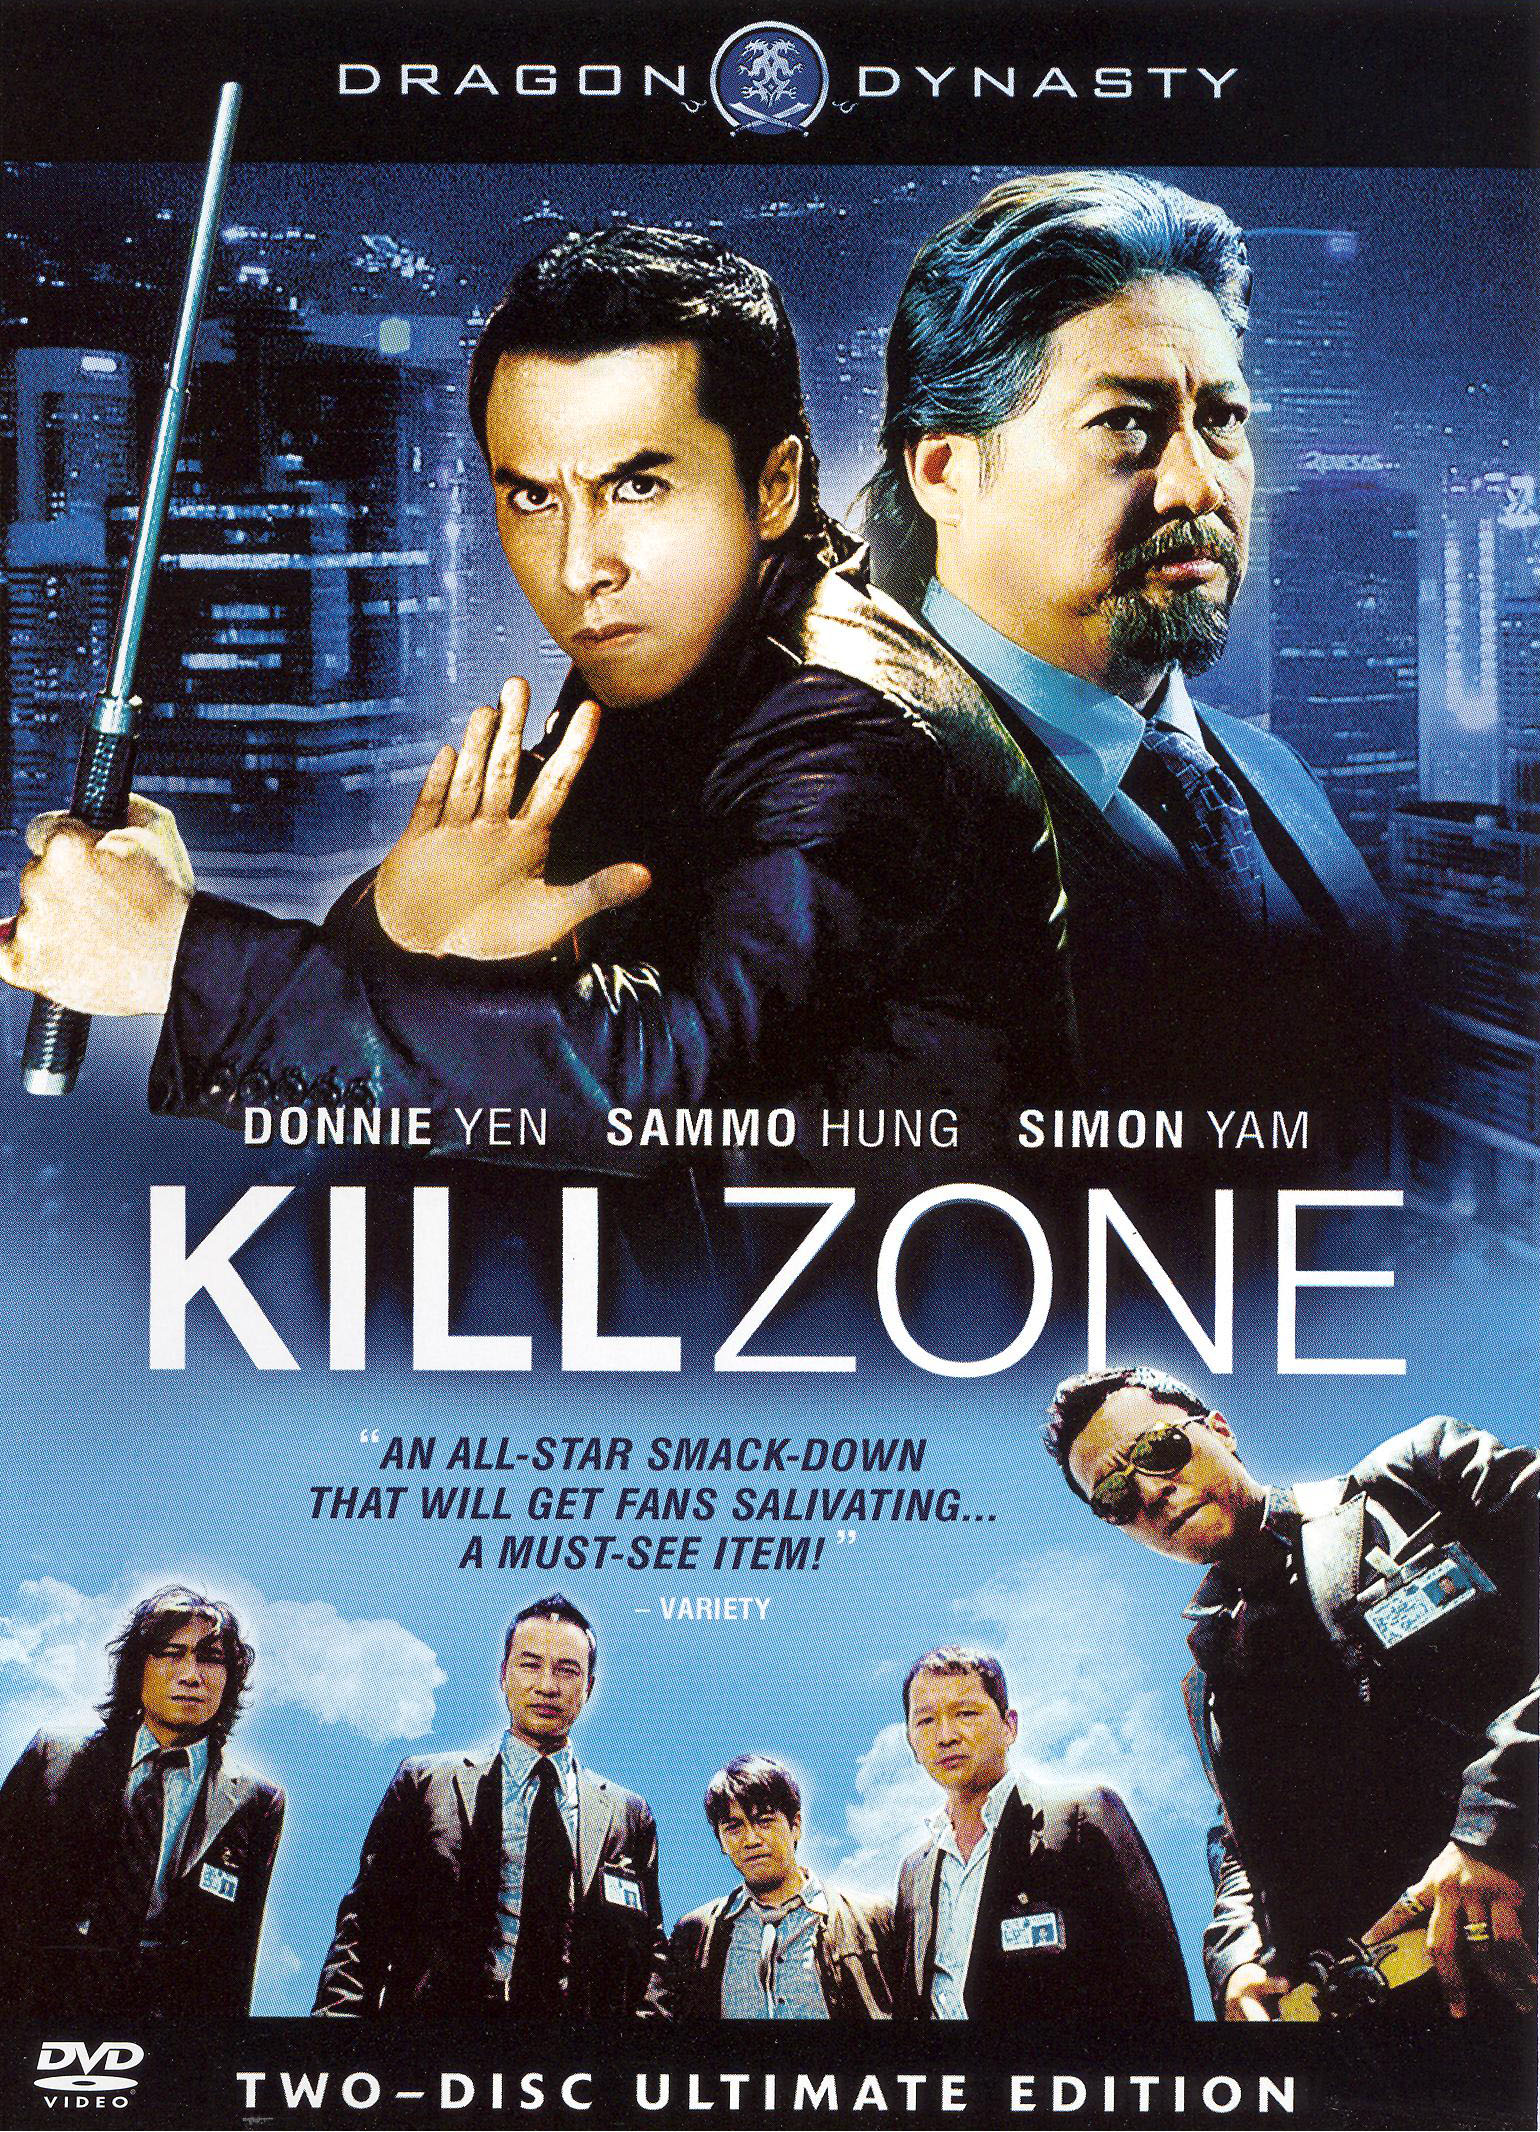 Kill Zone 2 Movie Still - #319406